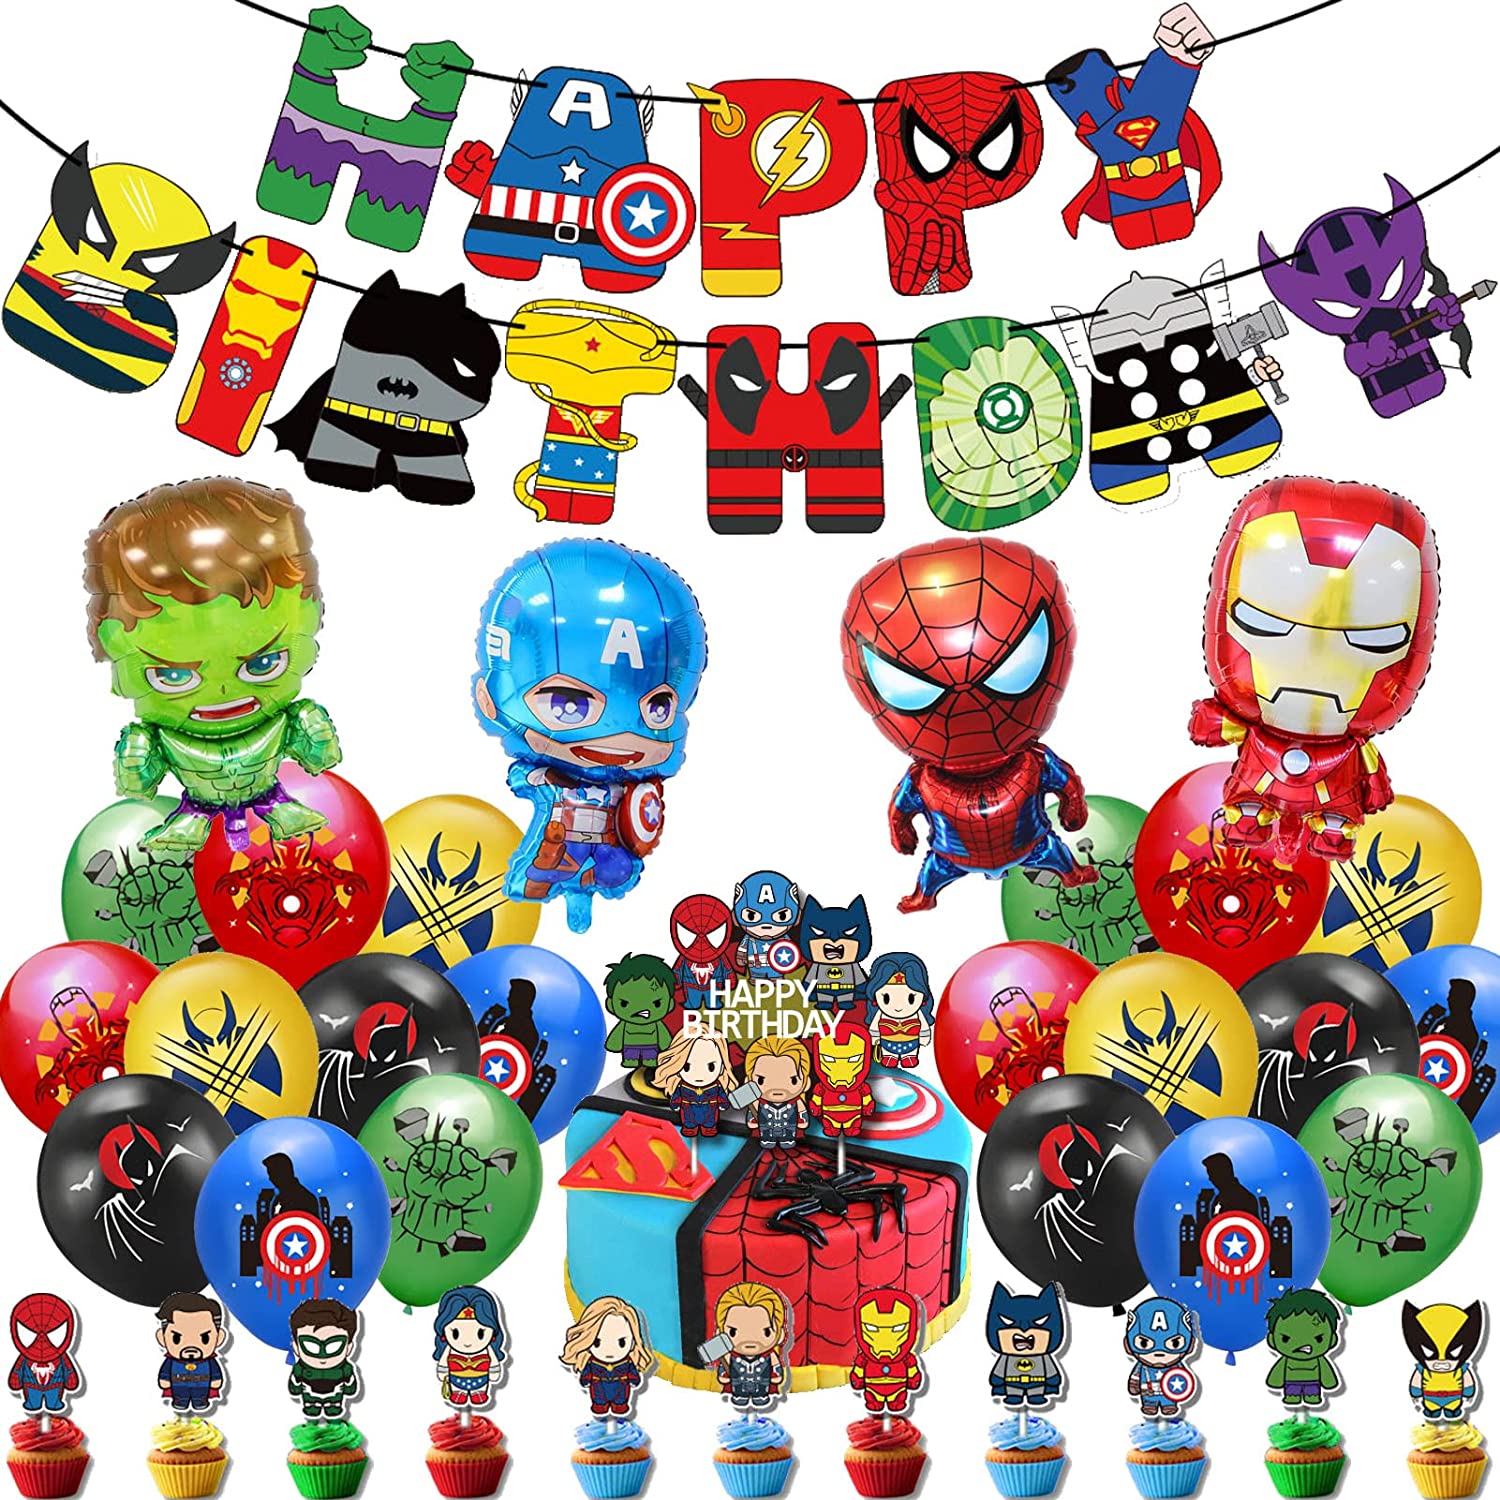 Marvel birthday party